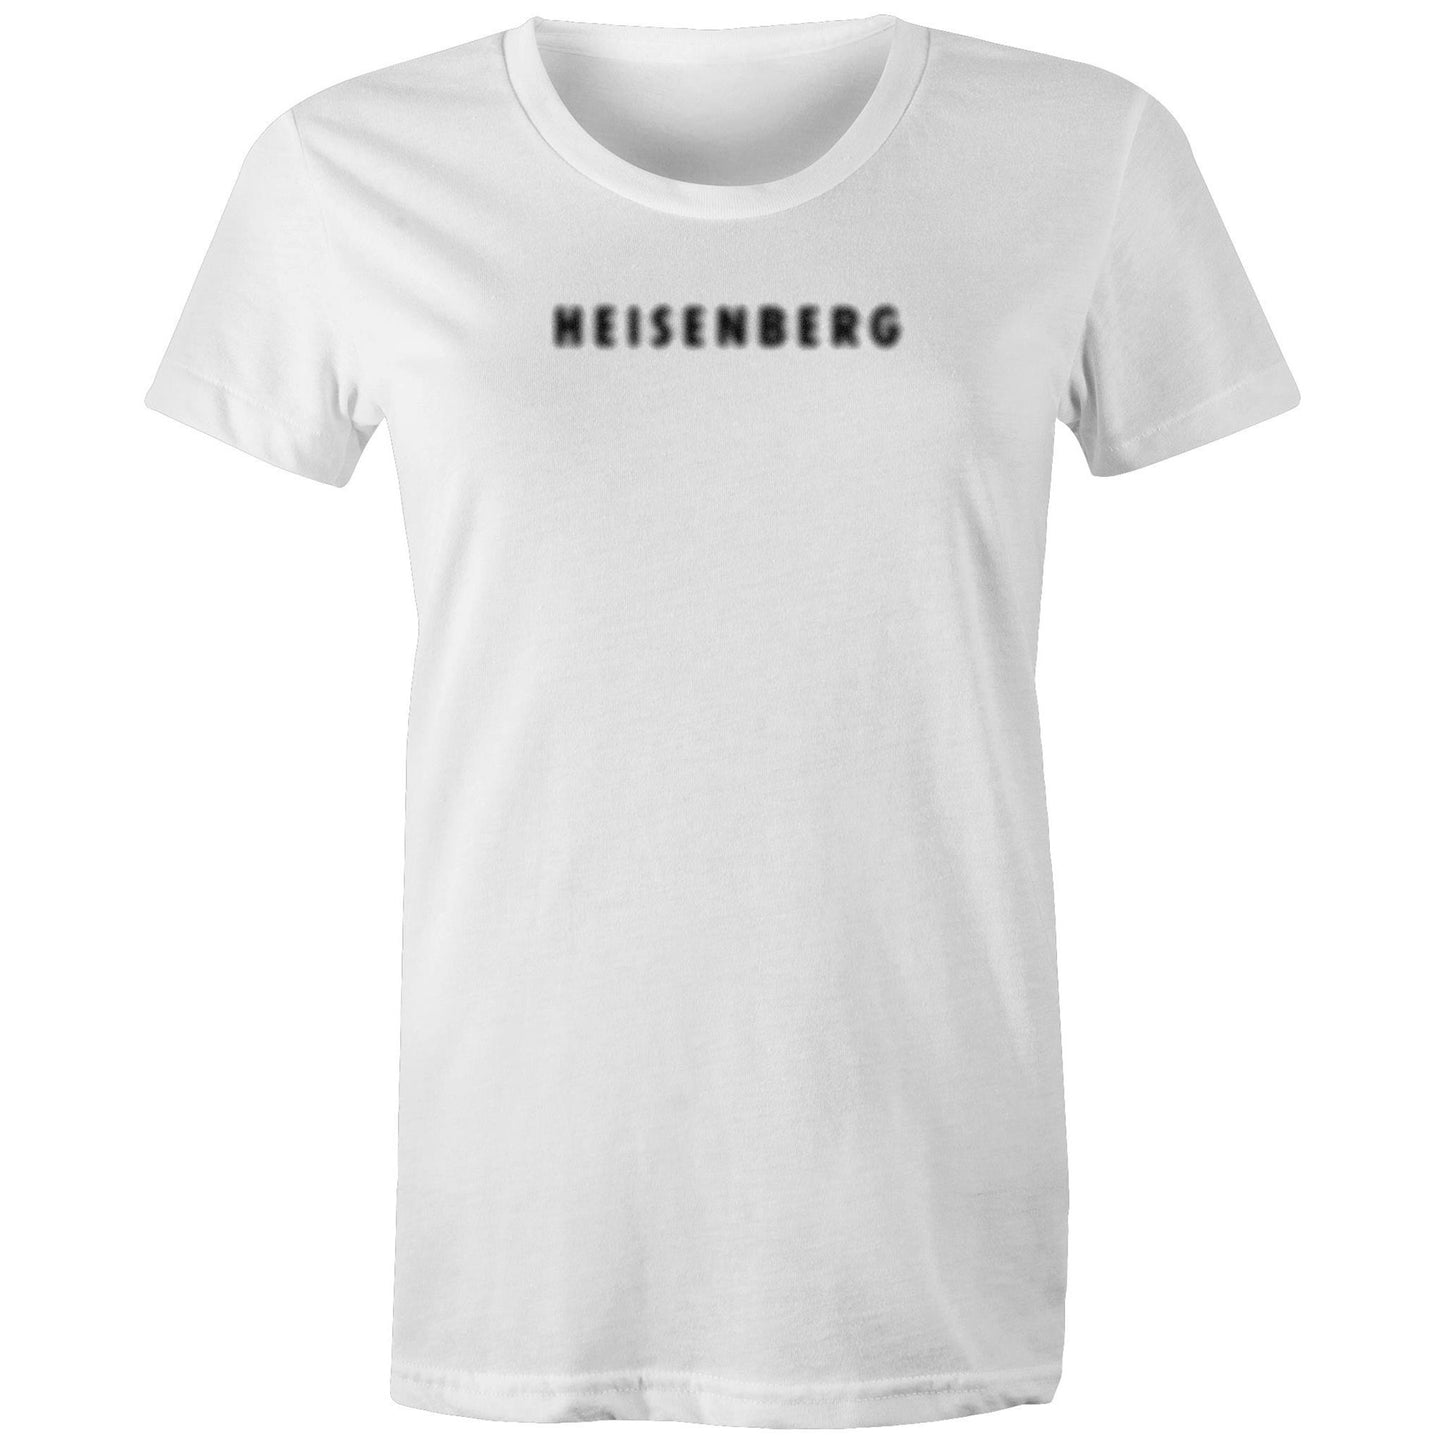 Heisenberg T Shirts for Women